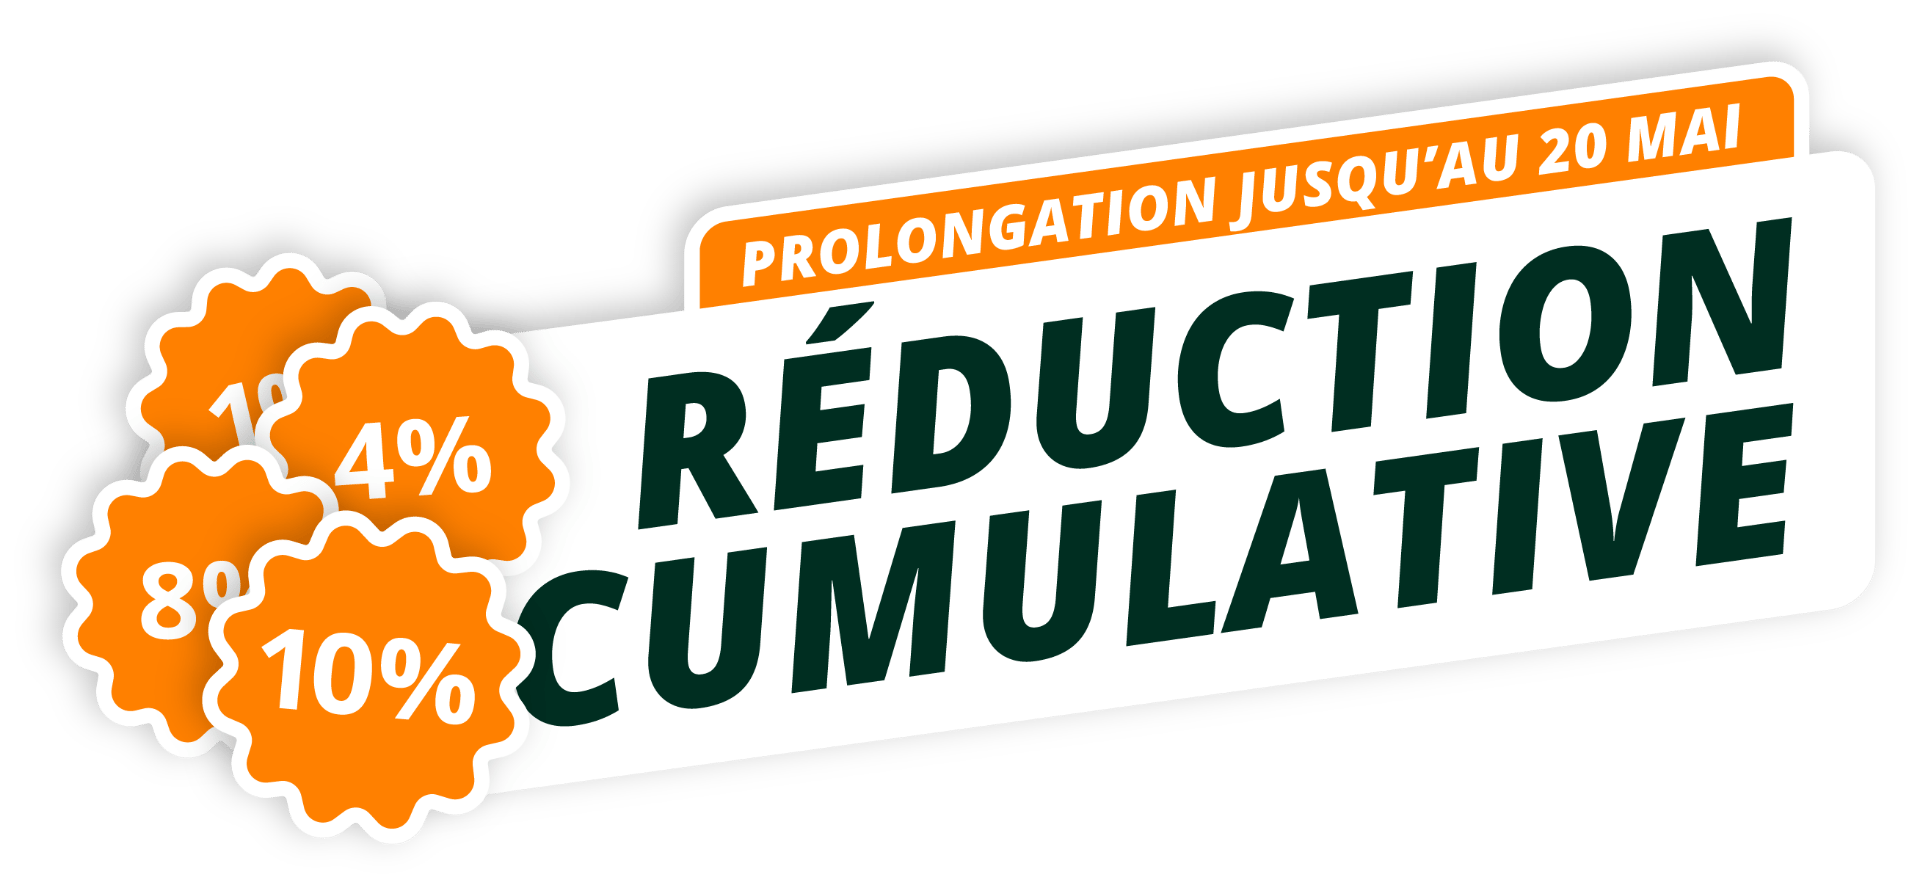 Réduction cumulative prolongation jusqu'au 20 mai.